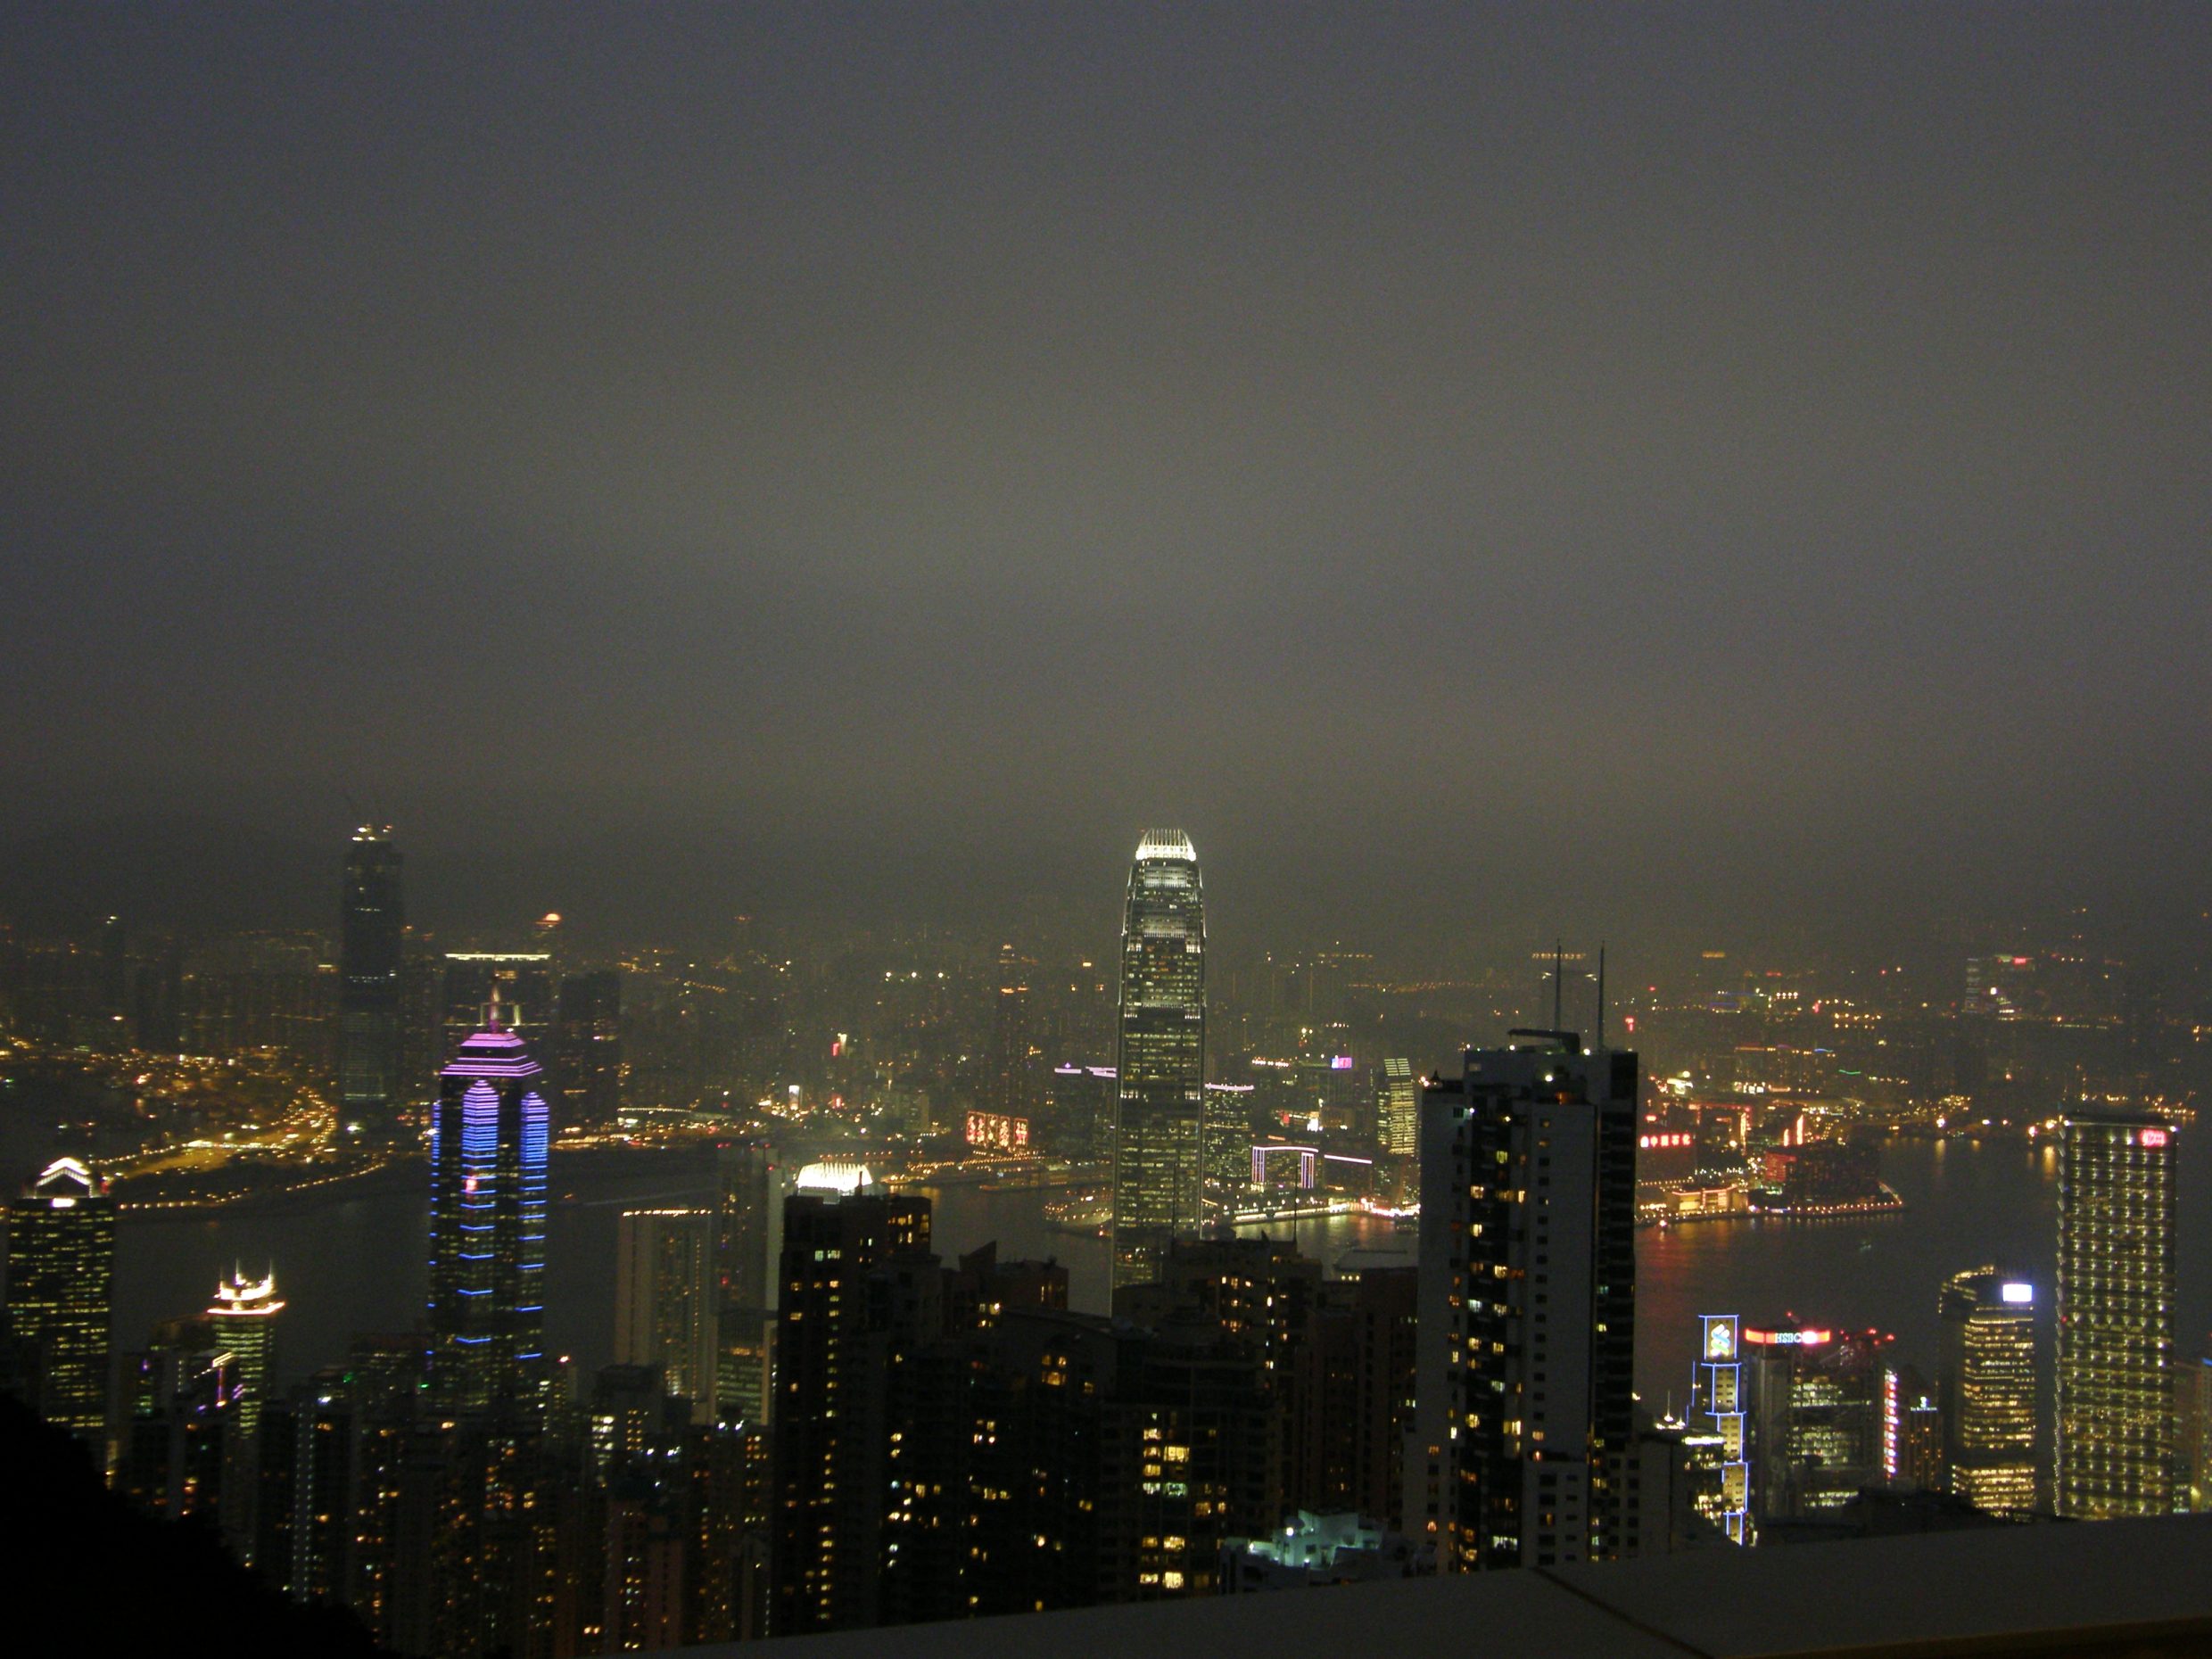 Hong Kong night view from Ngong Ping